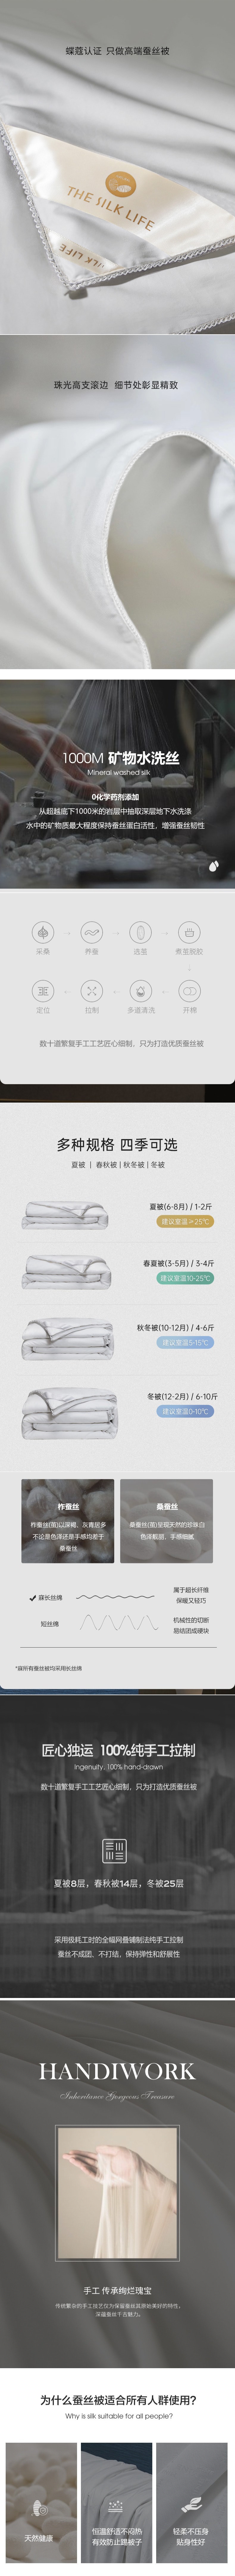 【中国直邮】柏意 桑蚕丝被子 100%双宫茧桑蚕丝填充 Twin 150x200cm 1.5㎏ 夏被 灰色